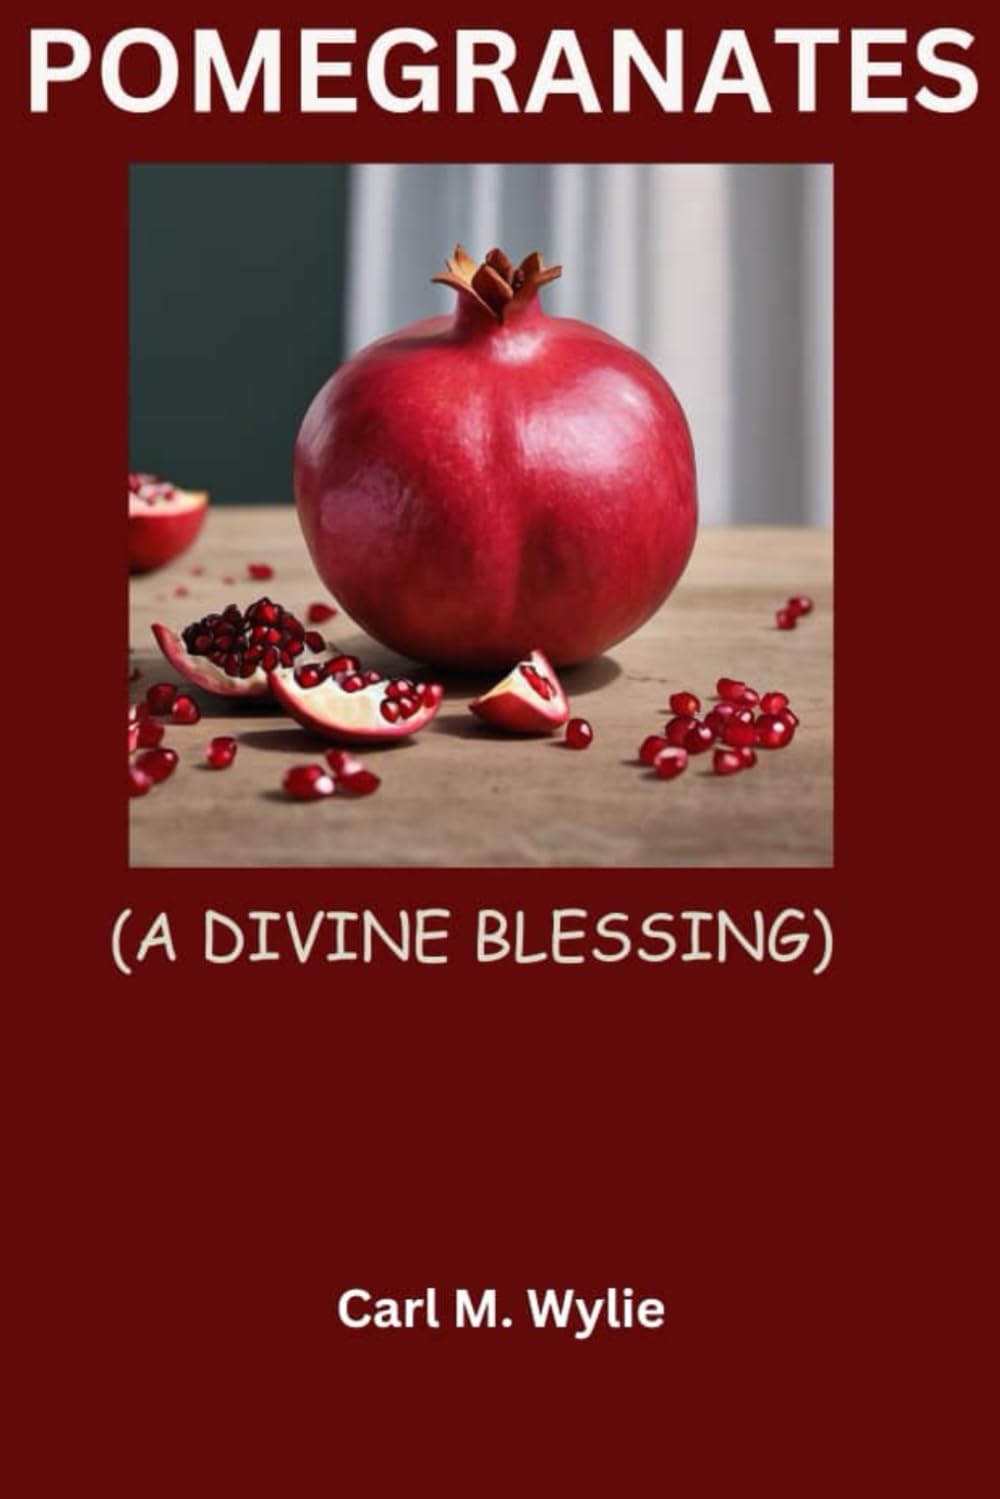 Pomegranates: Divine Blessing